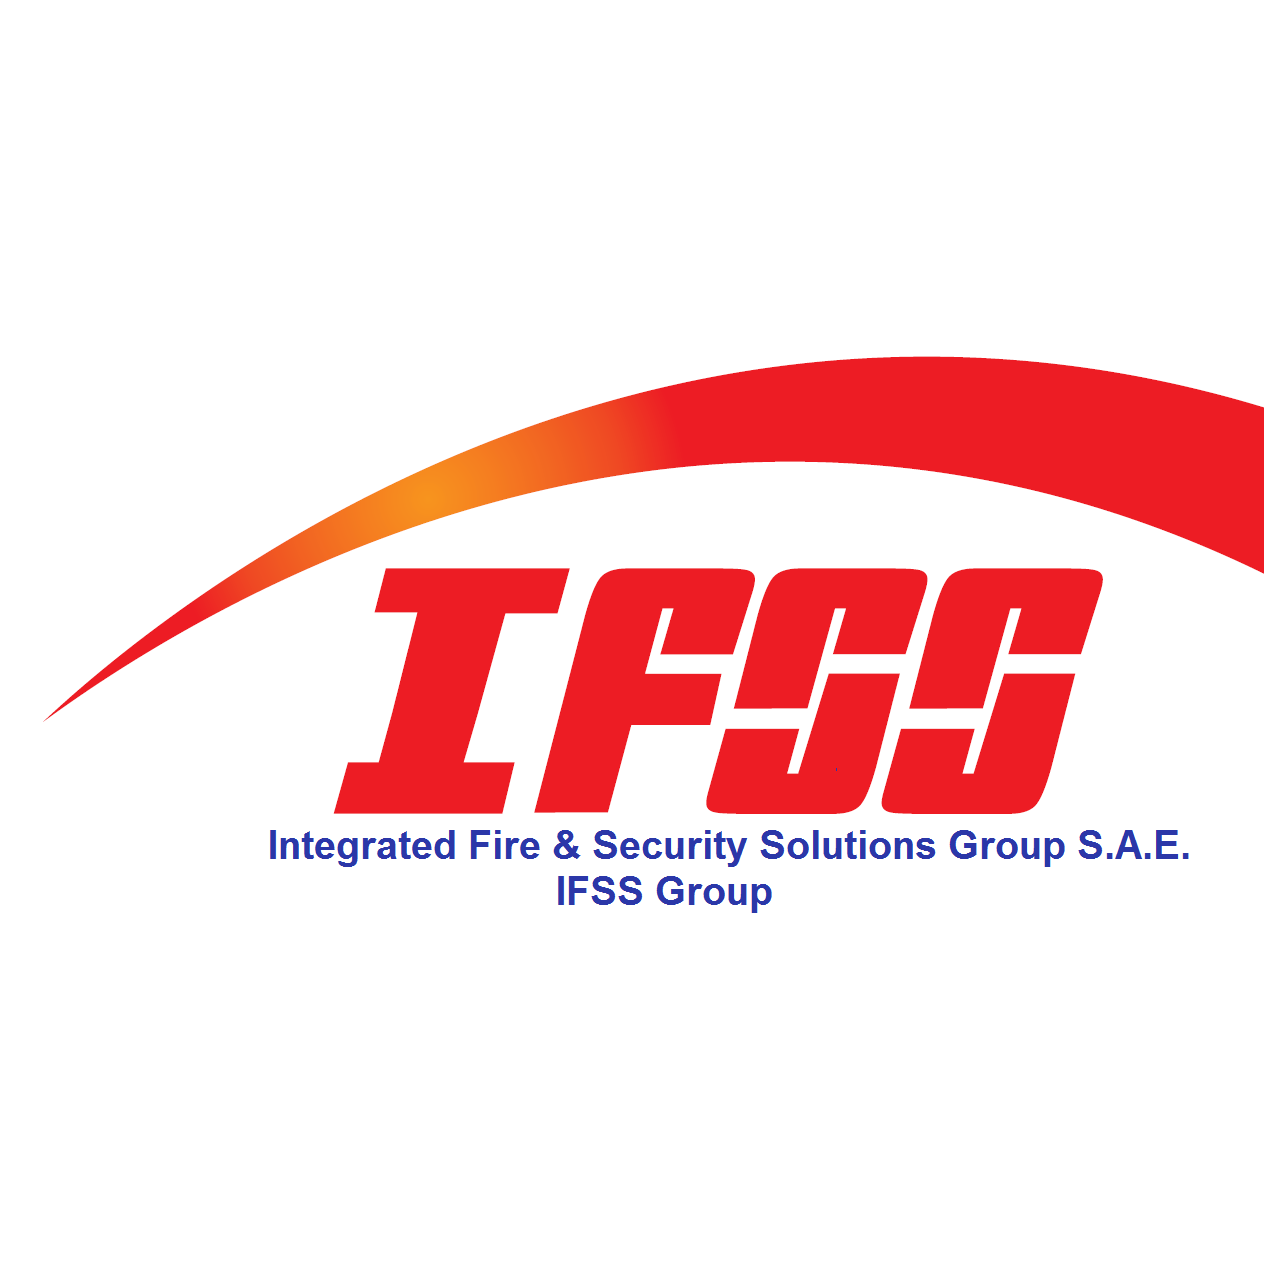 IFSS Group